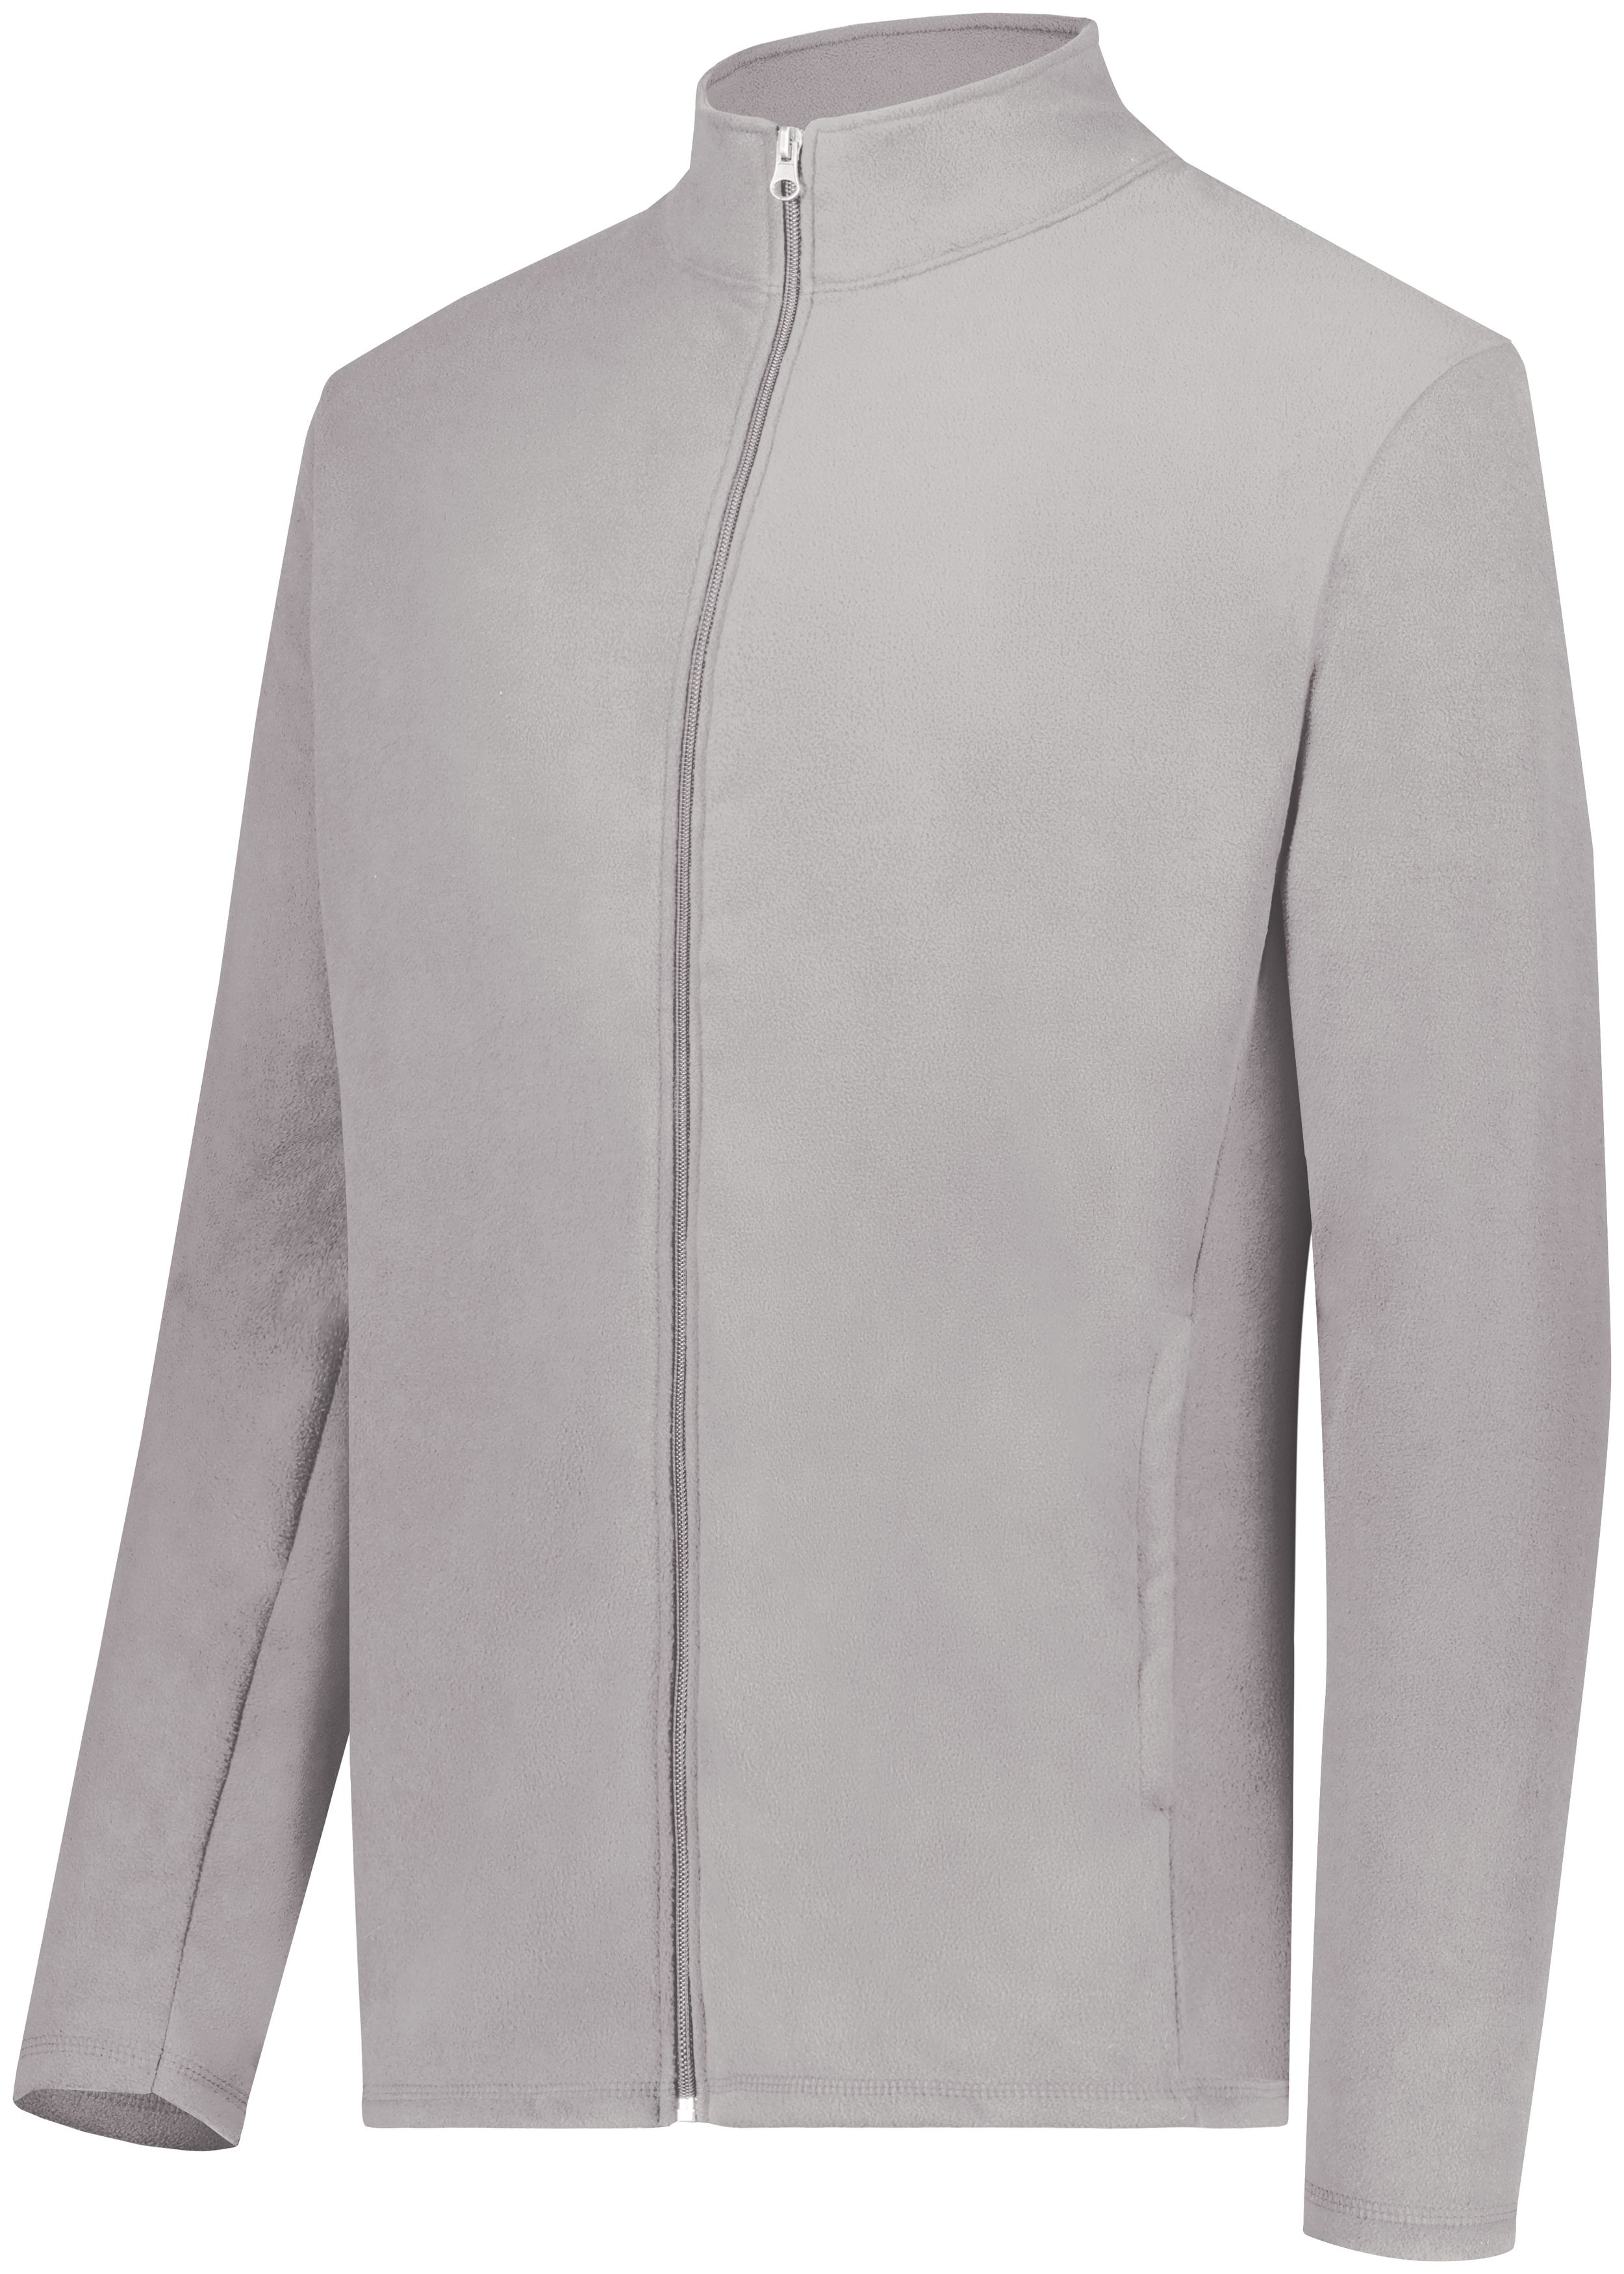 Augusta Sportswear 6861 - Micro-Lite Fleece Full Zip Jacket